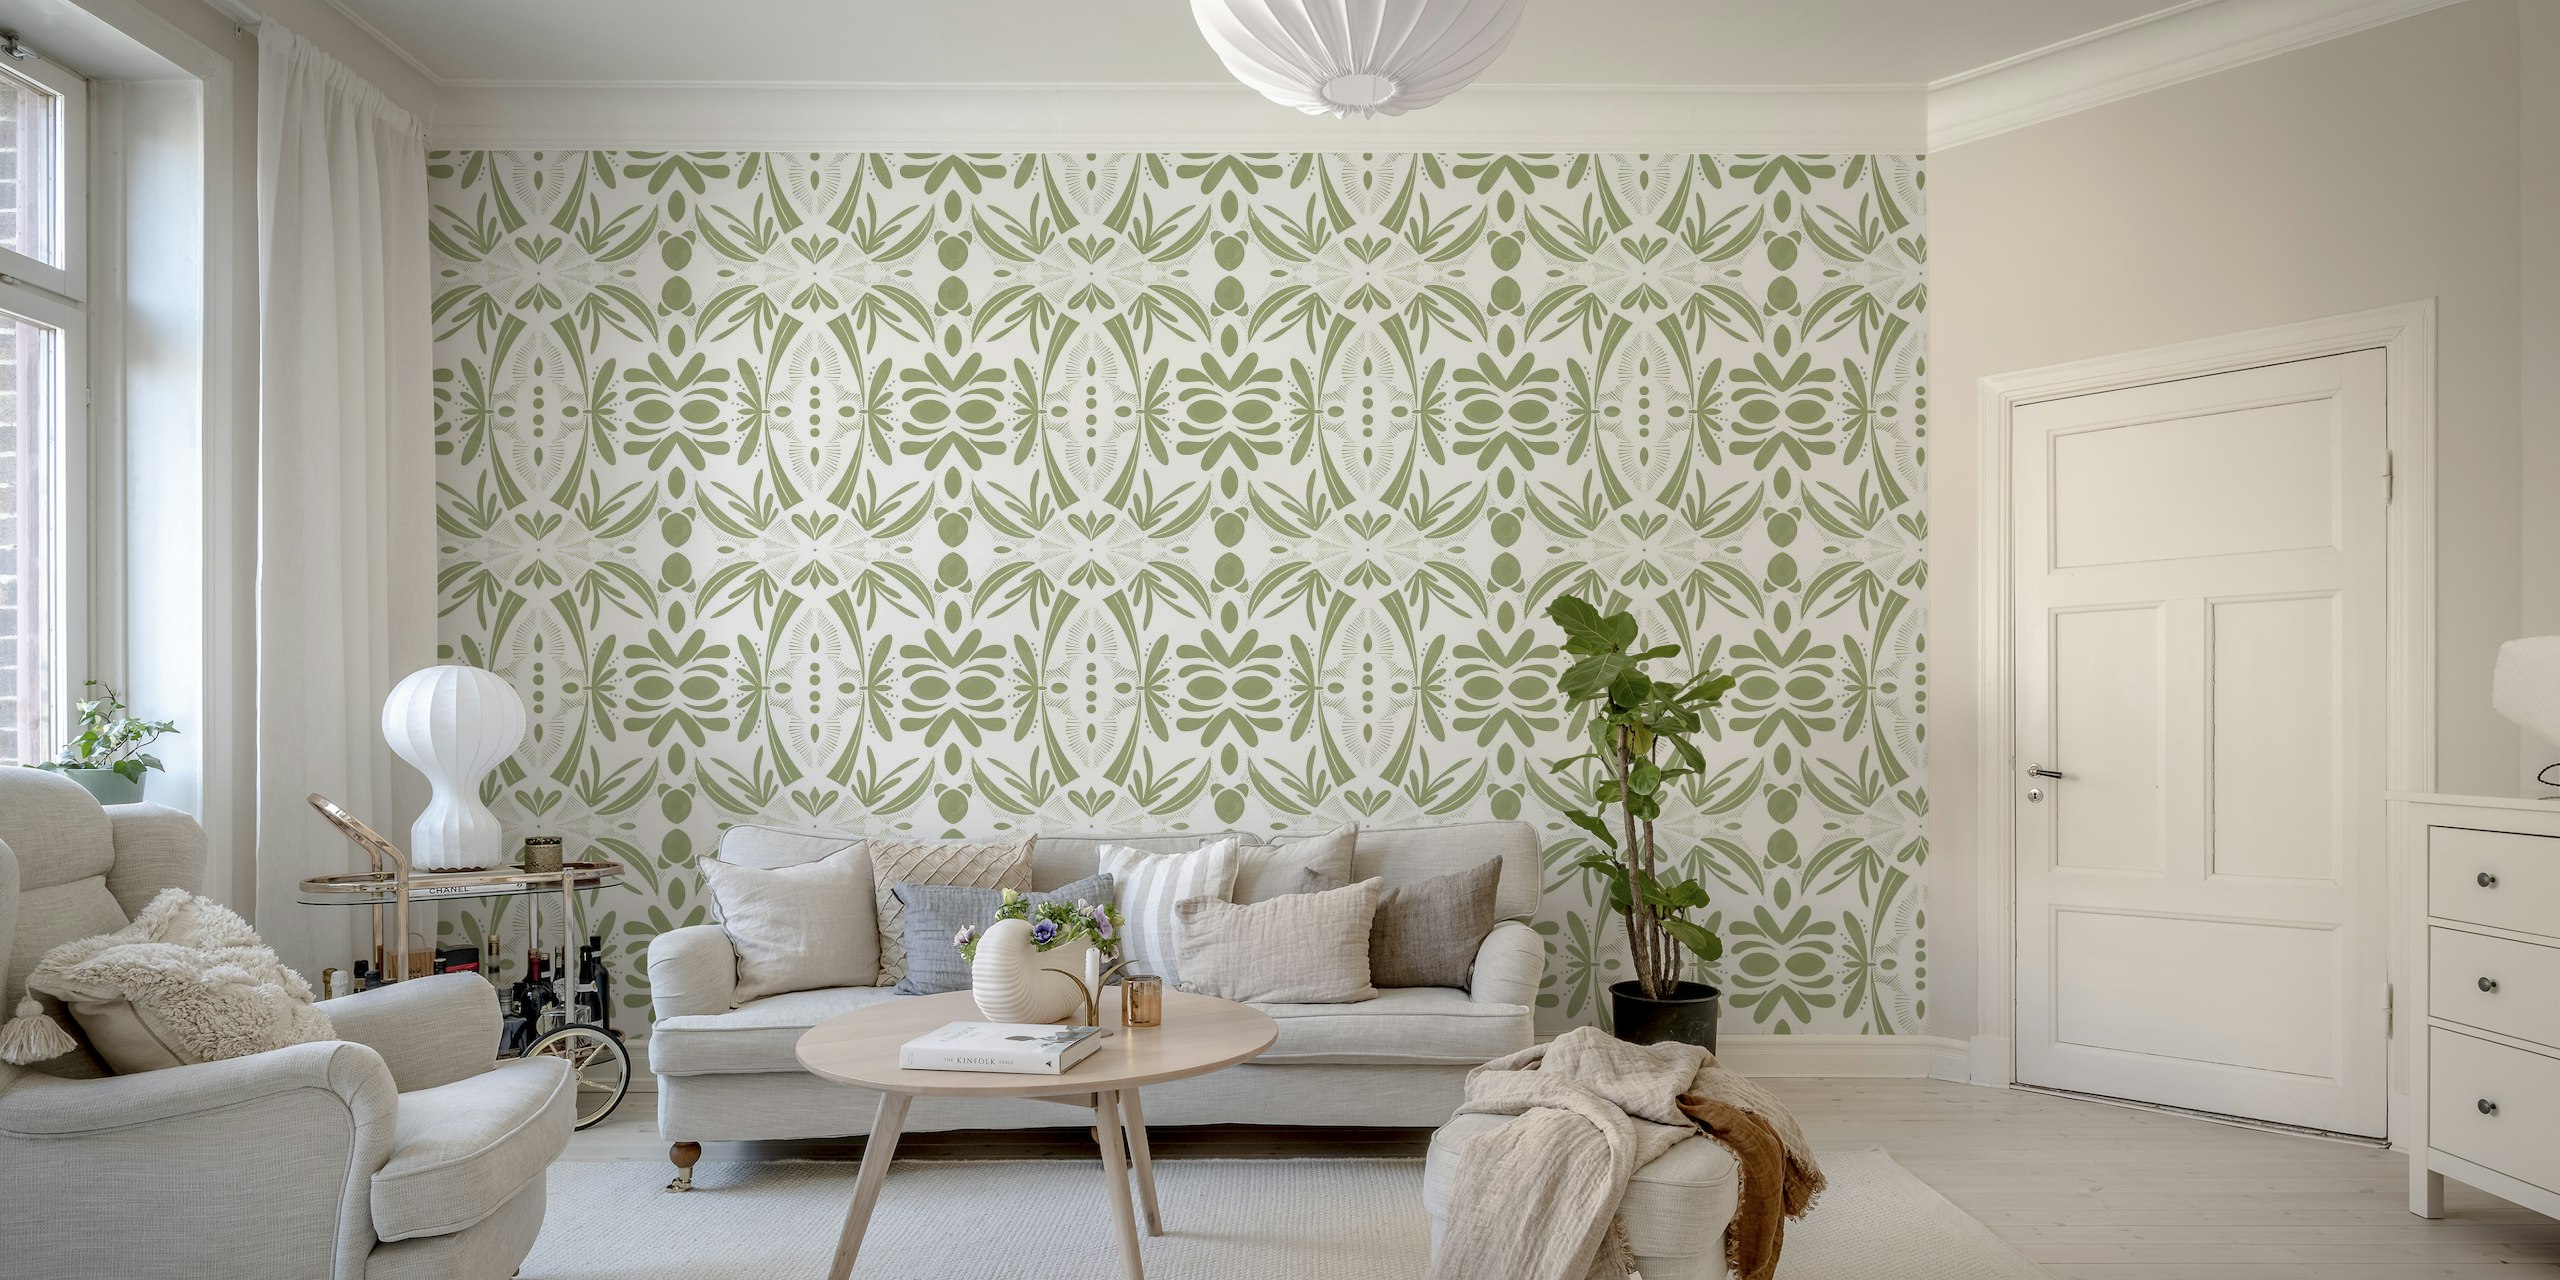 Green modern shapes tiles B behang